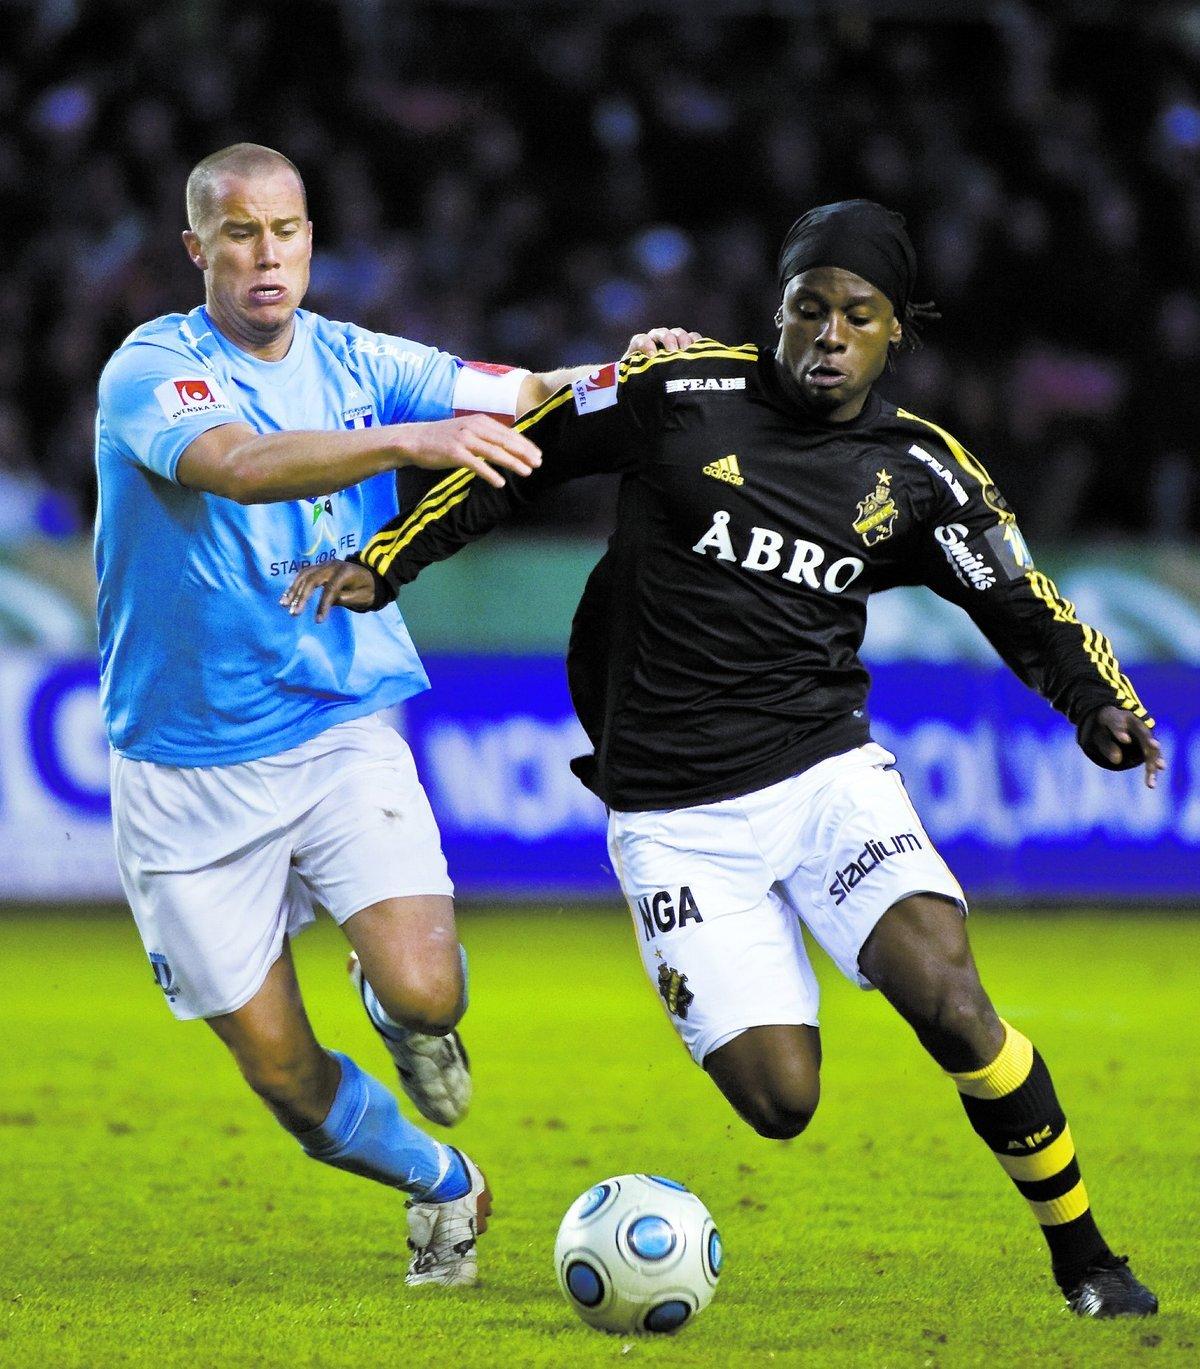 Martin Mutumba drabbades av en bristning i låret mot Elfsborg och missar de två sista matcherna innan uppehållet.